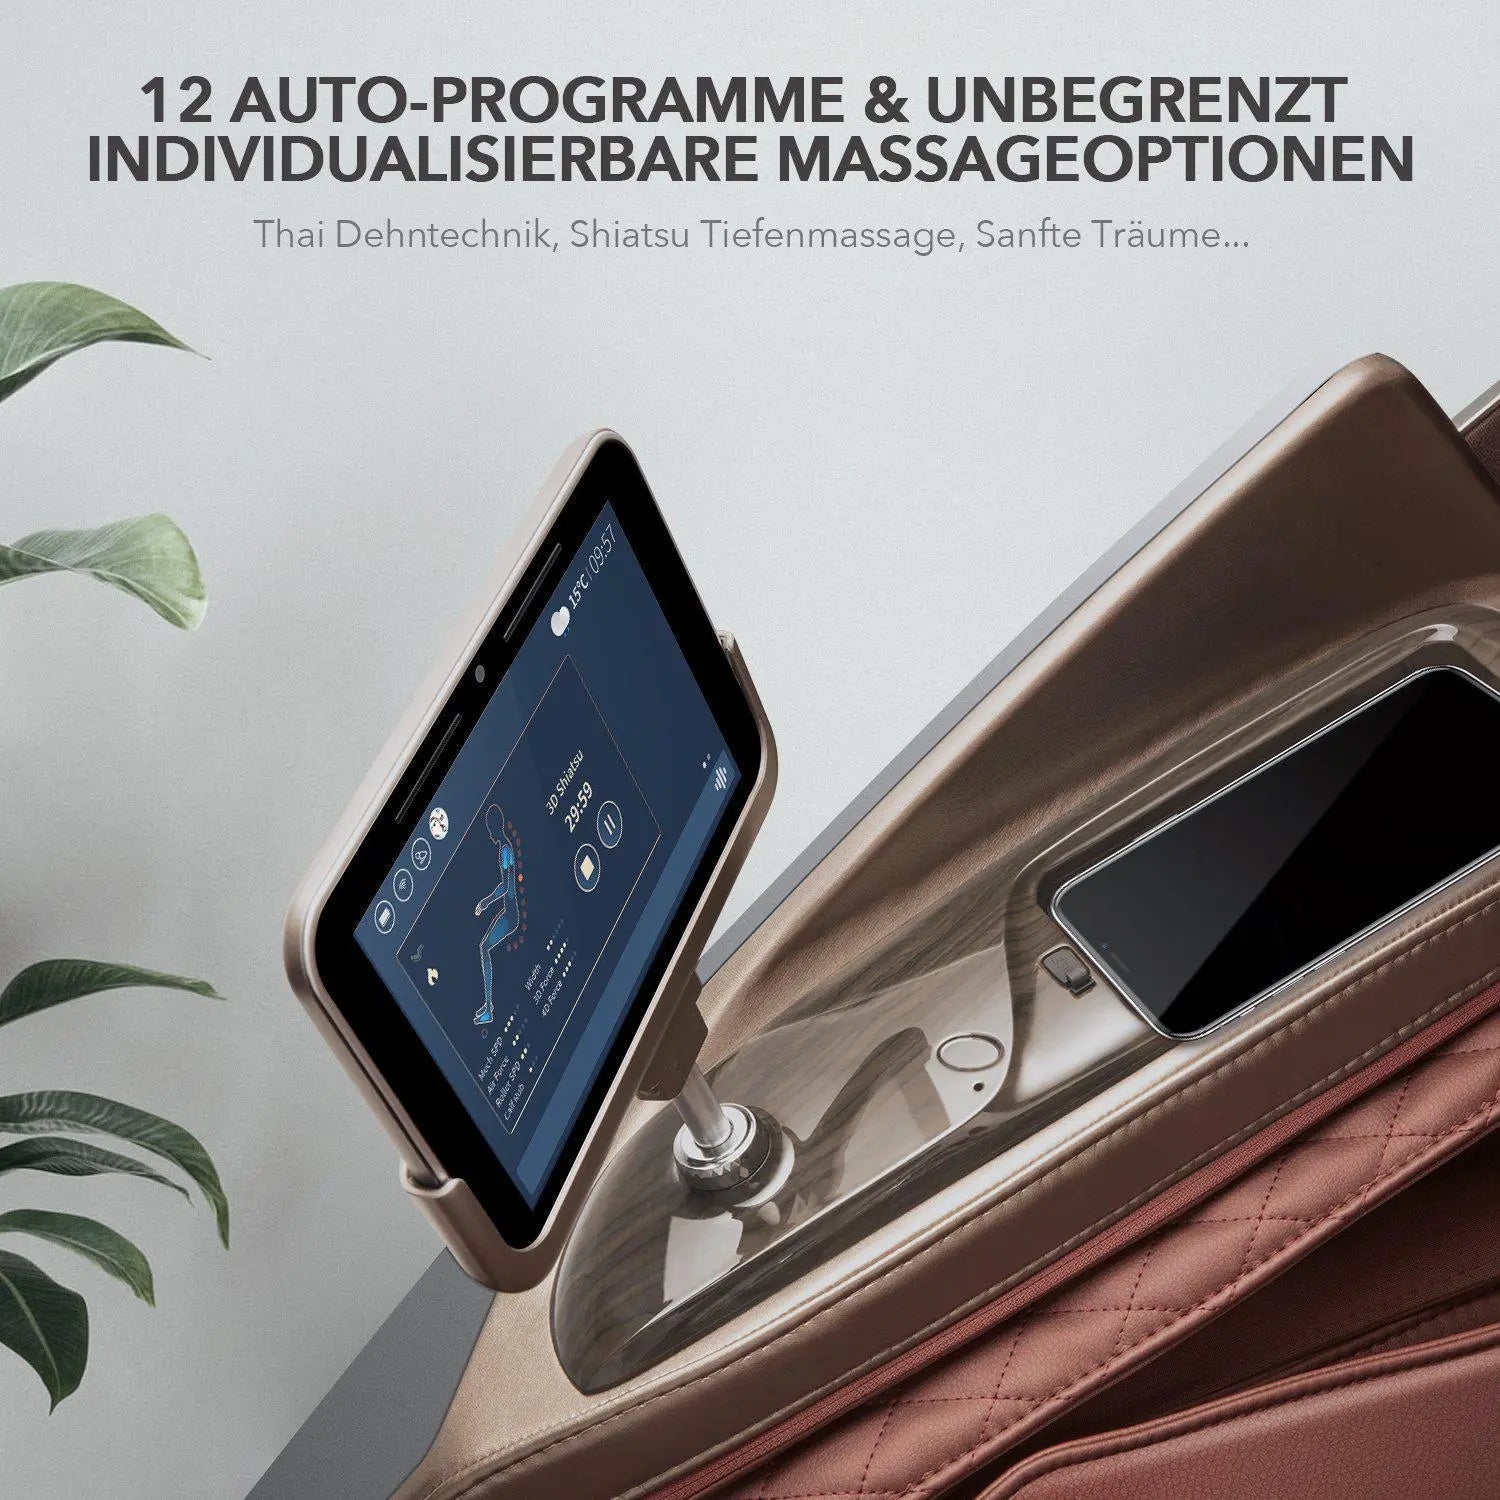 Massage 4D haut de gamme NAIPO, tablette Integriertes, prix du design Gewinner